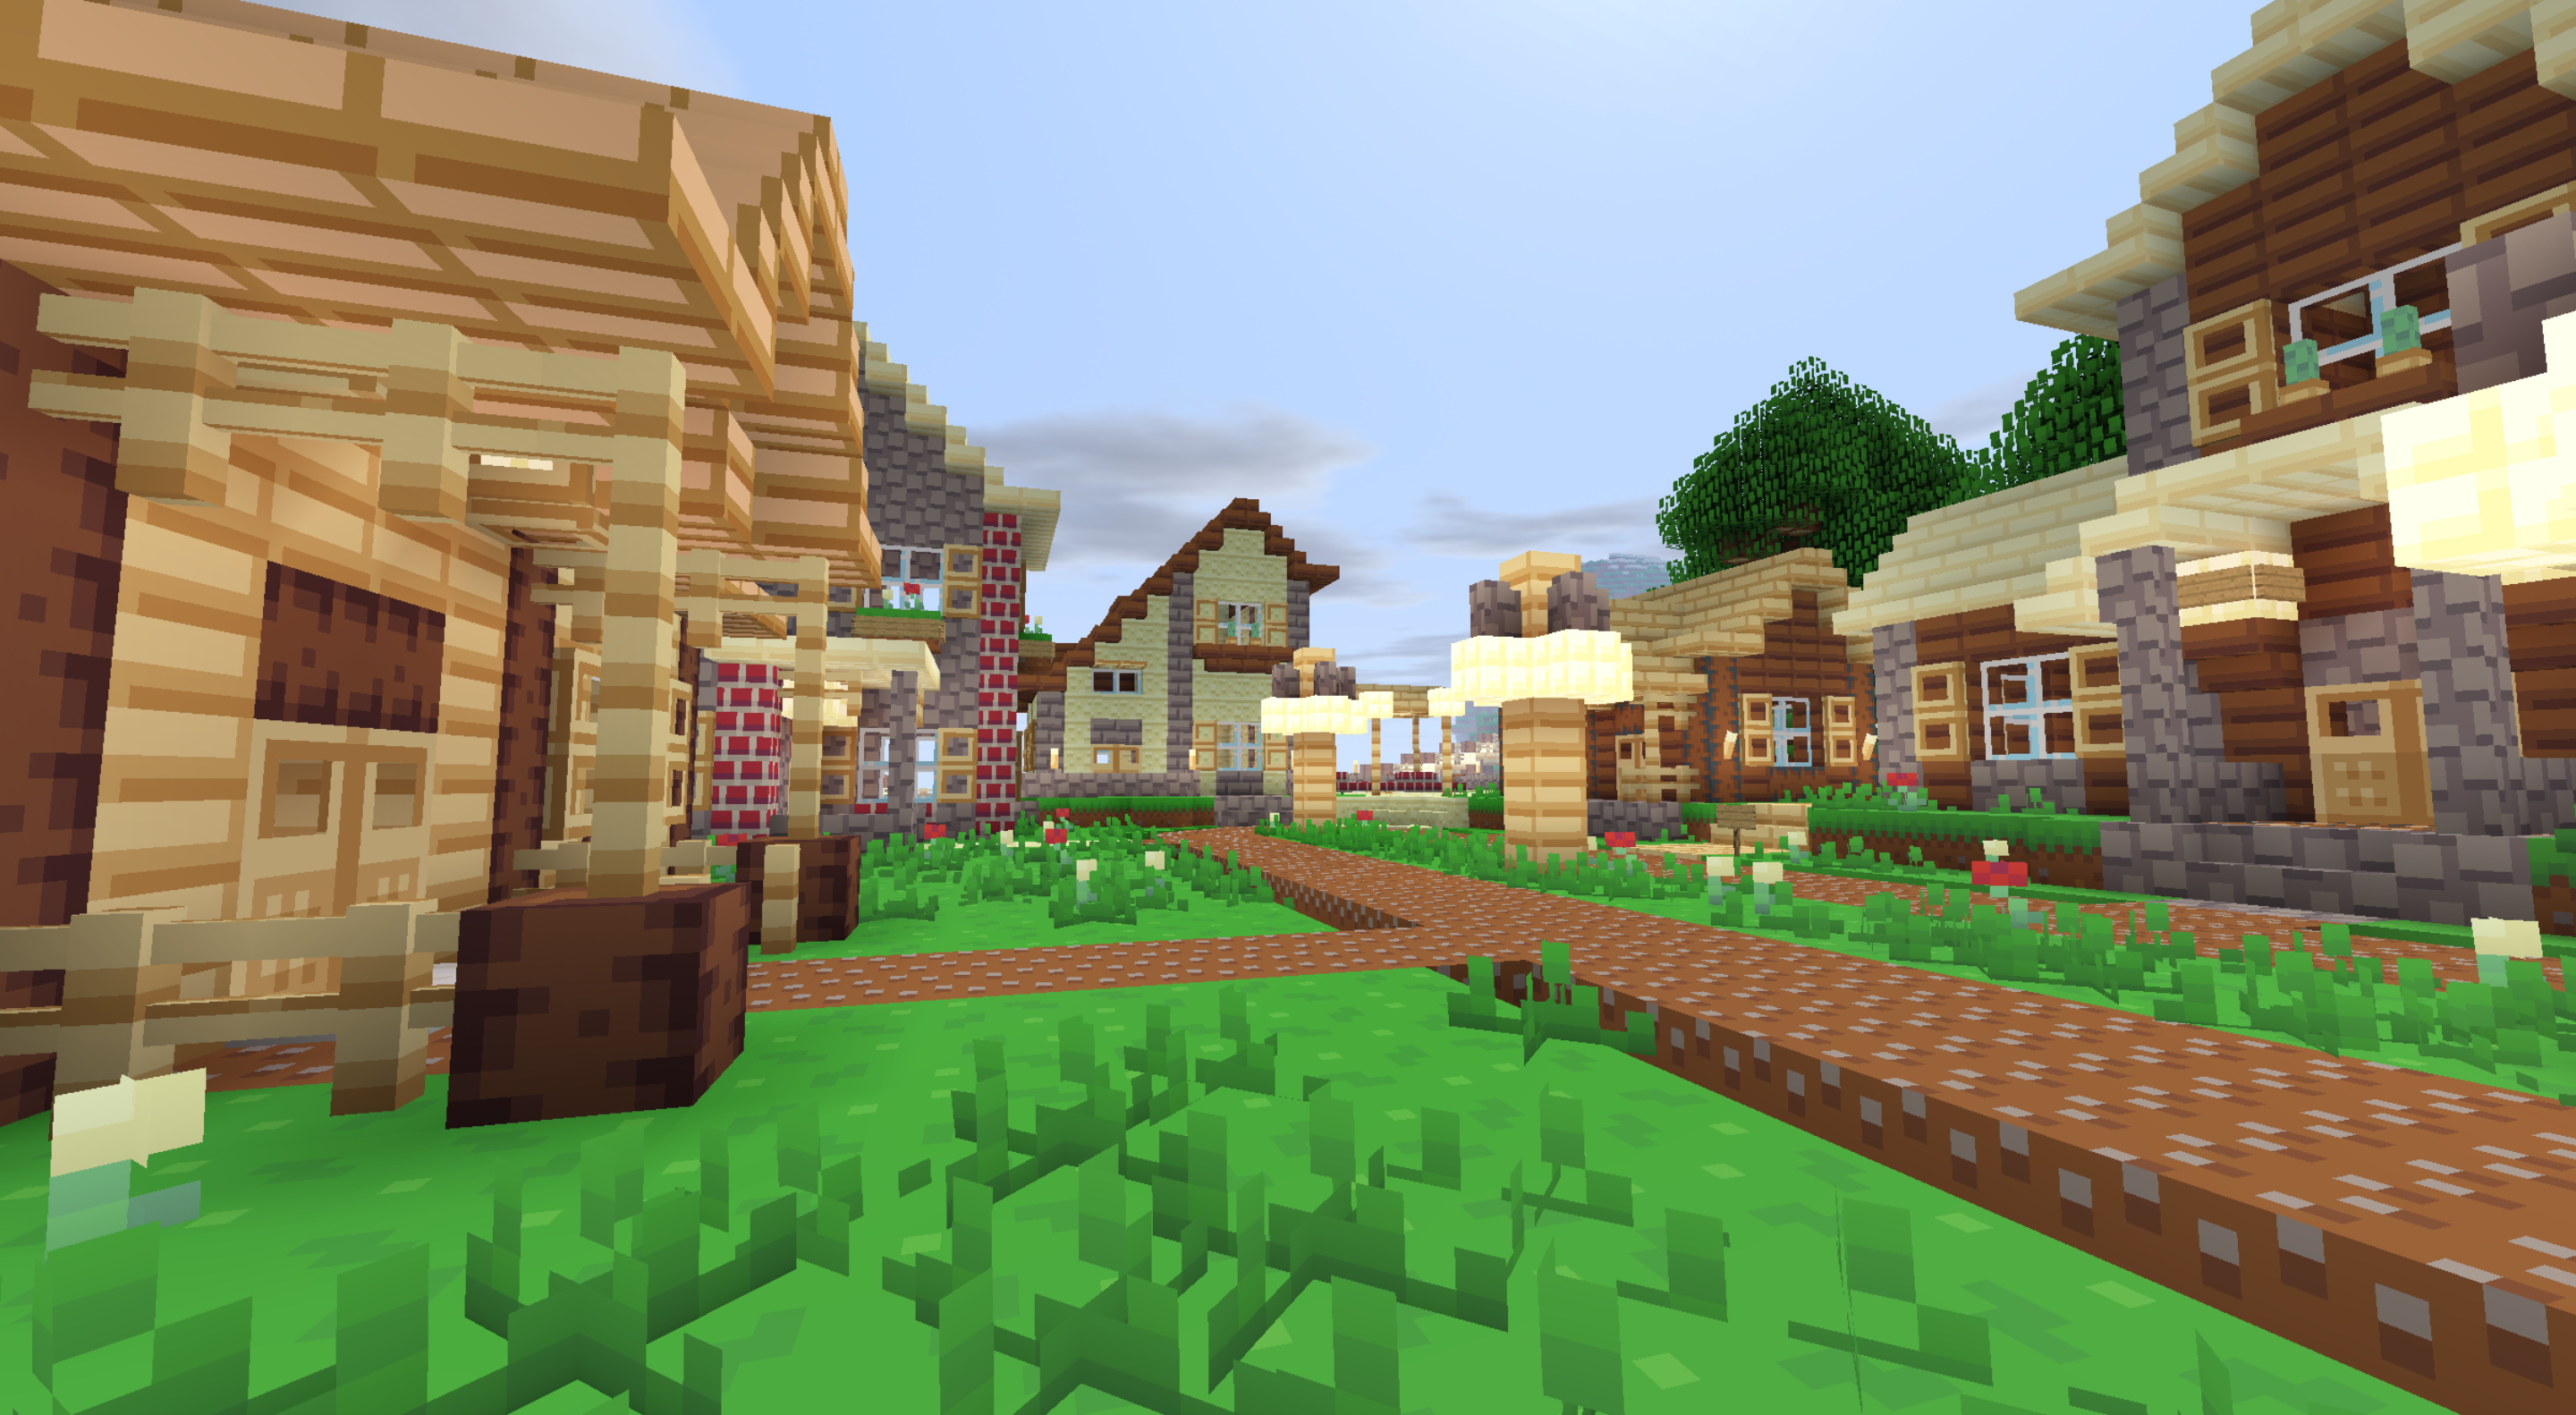 Minecraft texture pack - Splotch - An idyllic village with paths